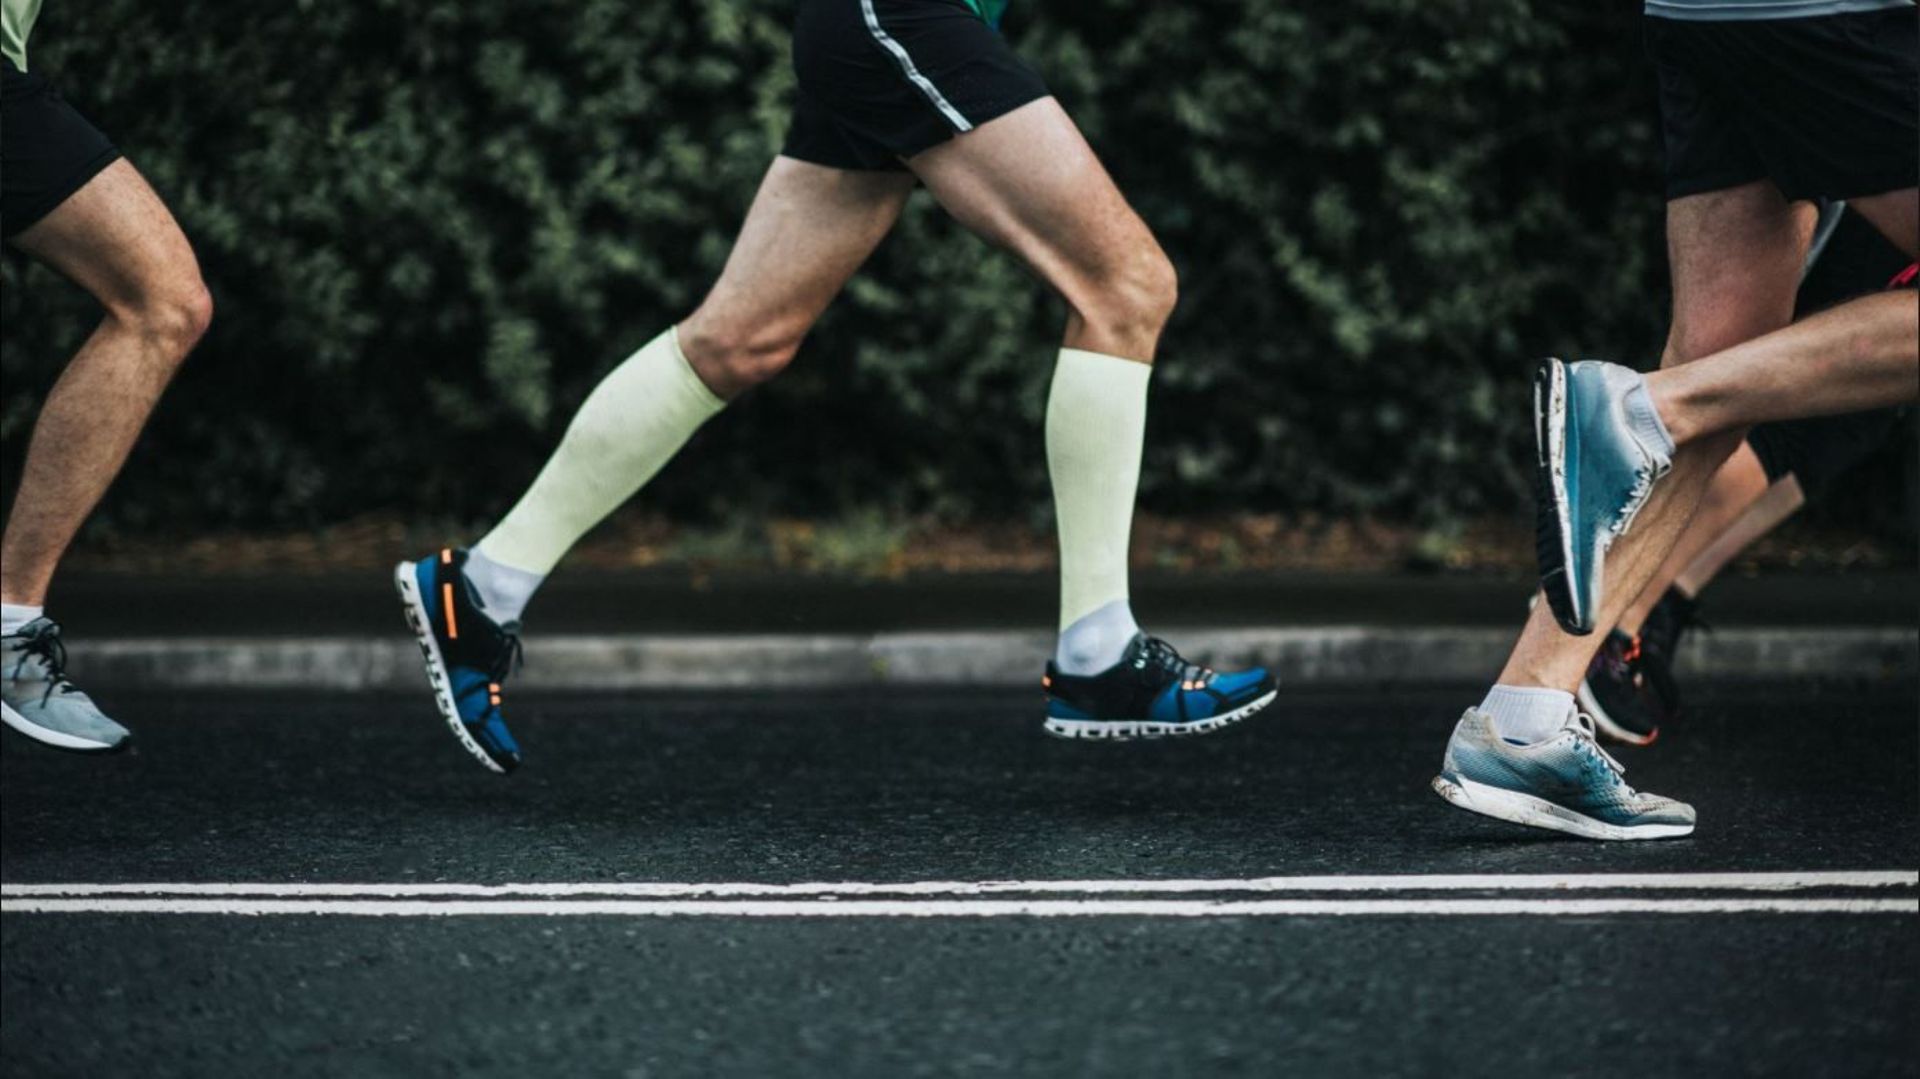 Comment poser idéalement son pied lors d’un jogging ? C’est l’objet de l’étude menée à l’ULiège.